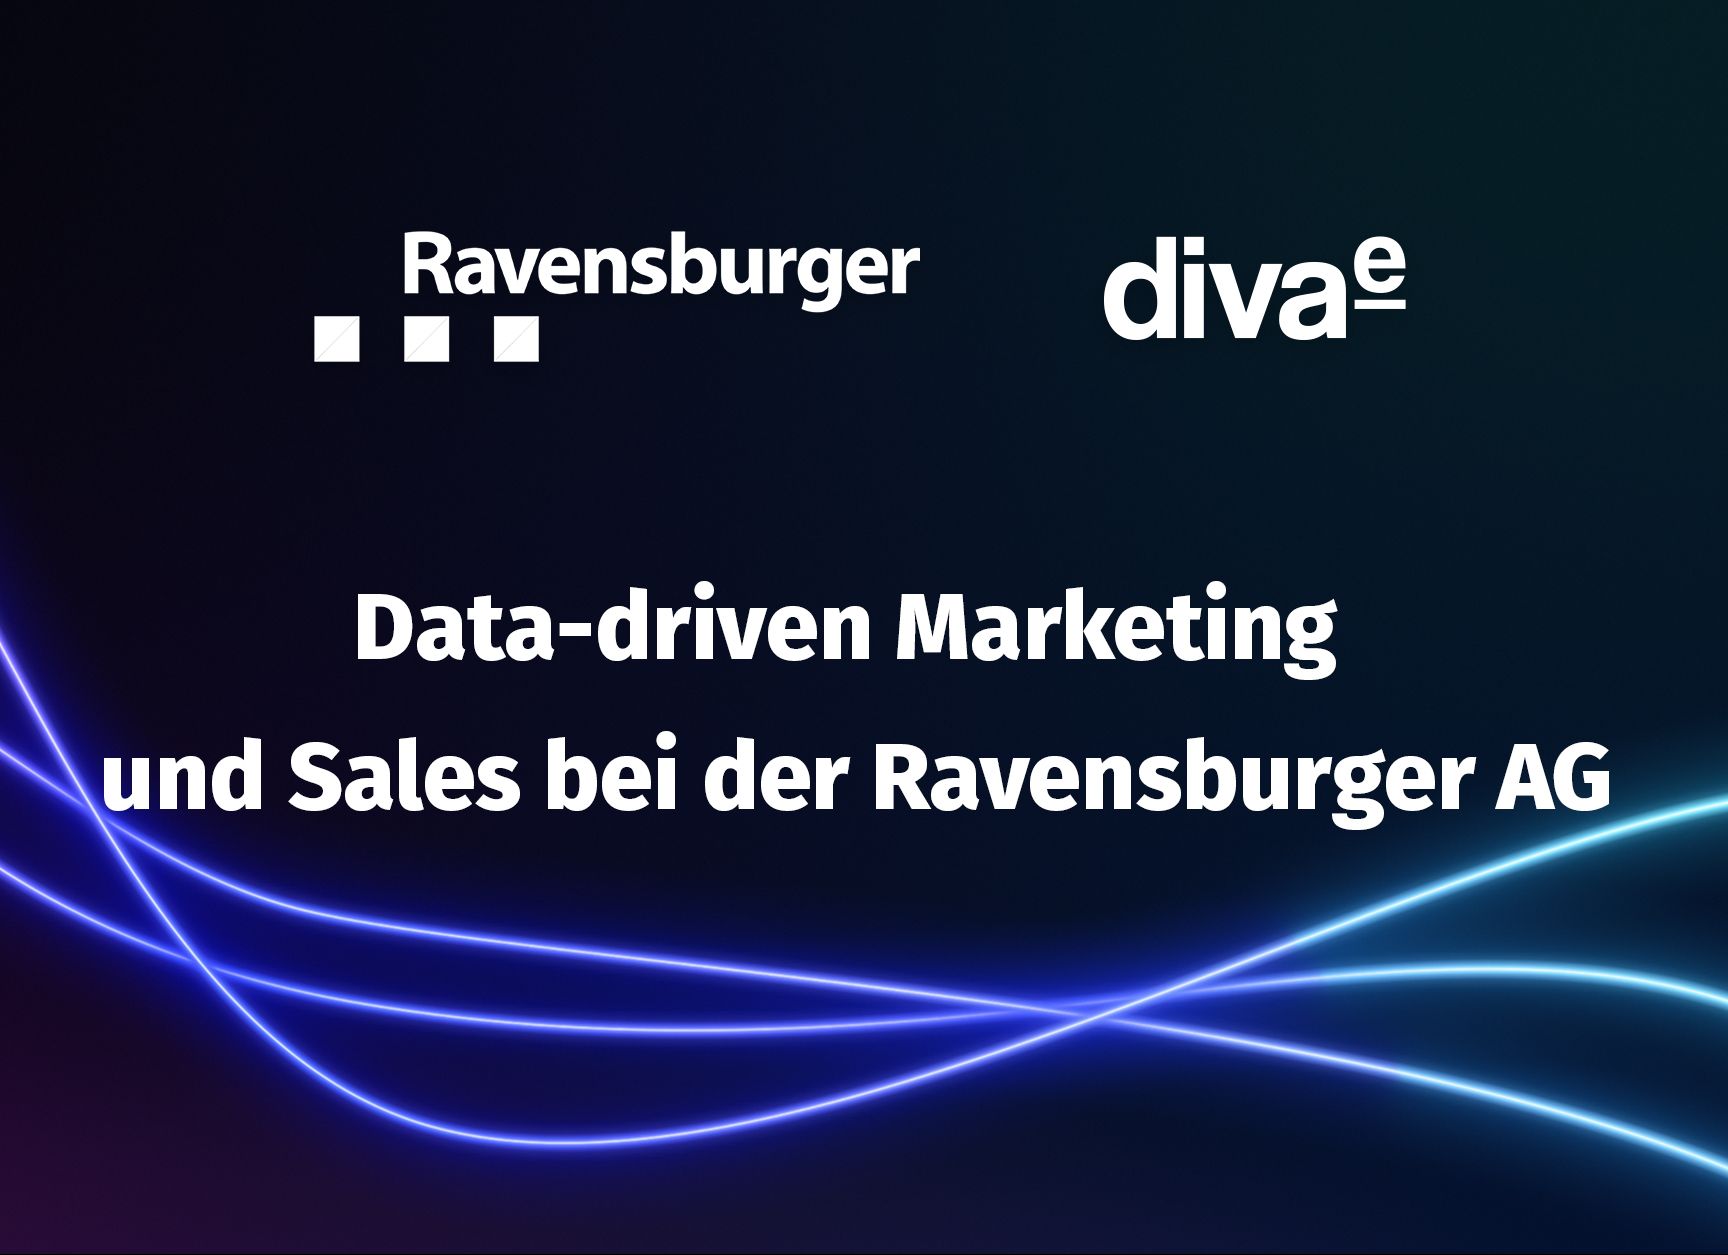 On-Demand Webinar: Data-driven Marketing bei der Ravensburger AG